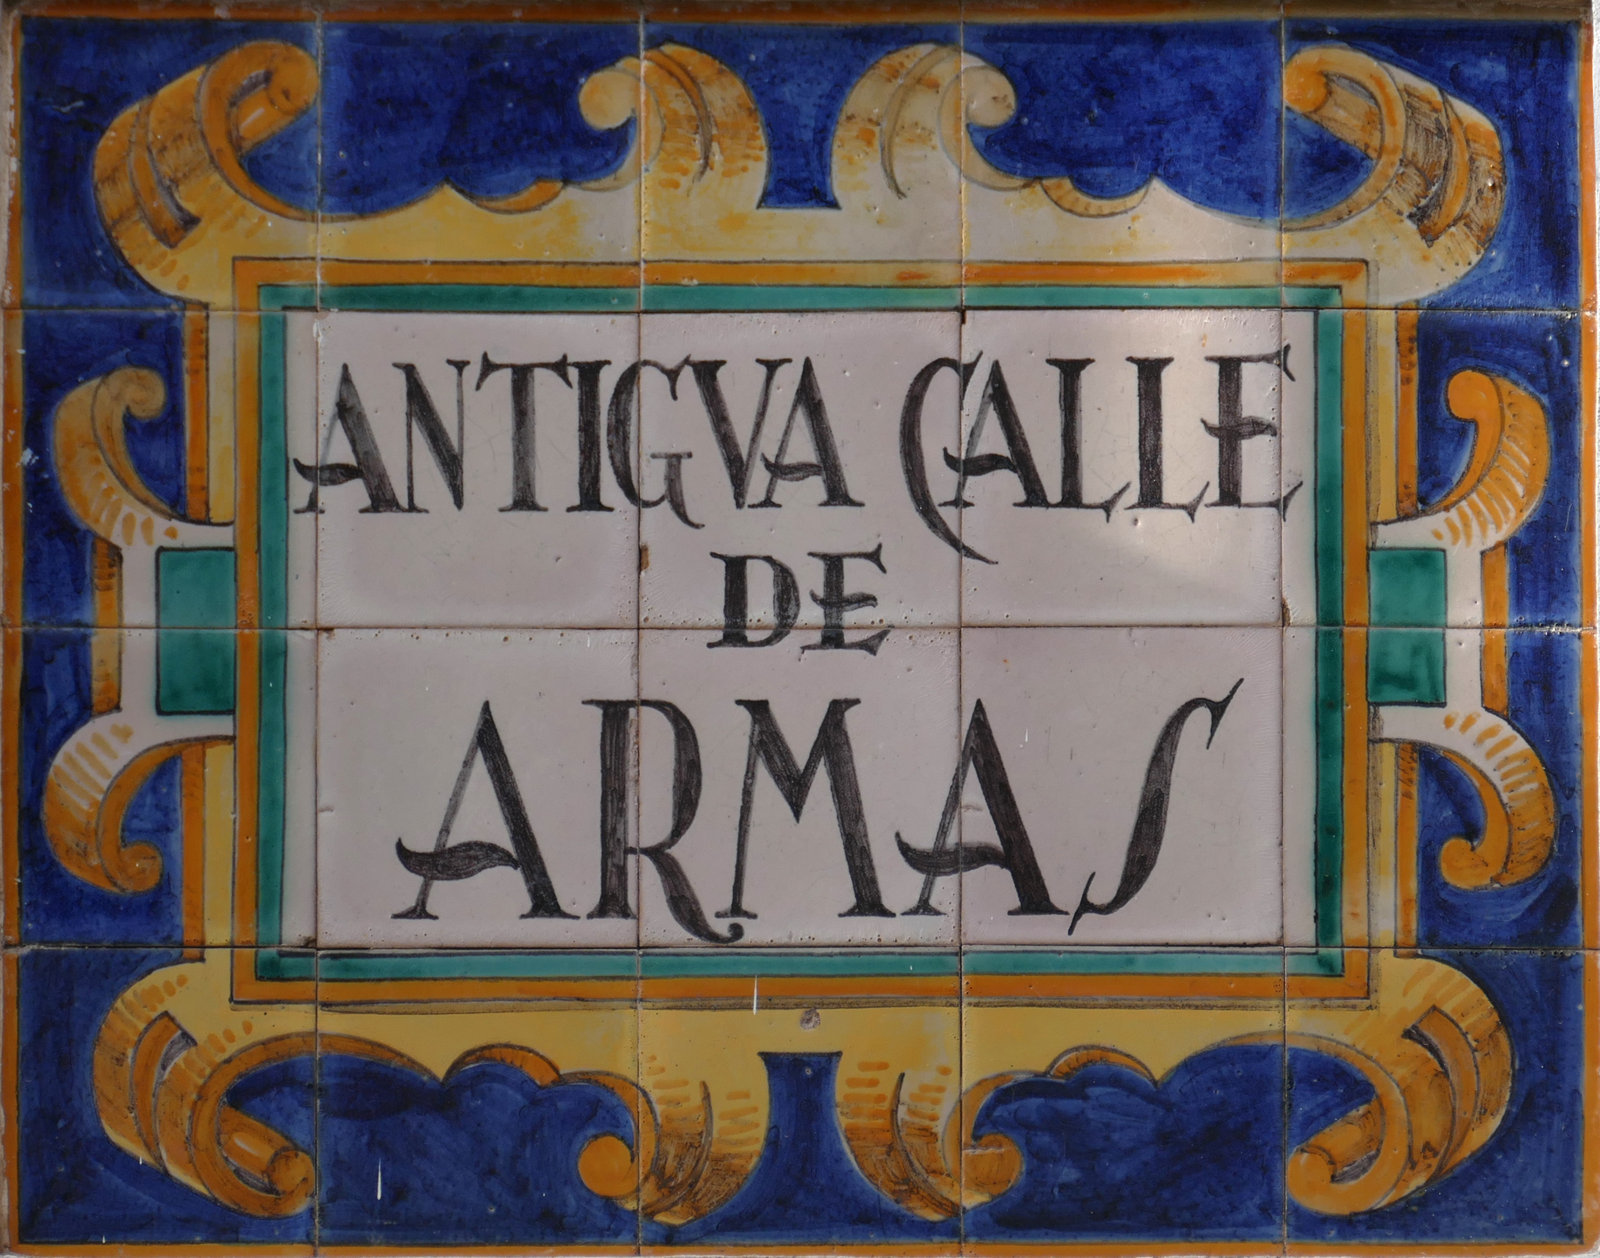 00997. Rótulo de la antigua calle de Armas. Sevilla.